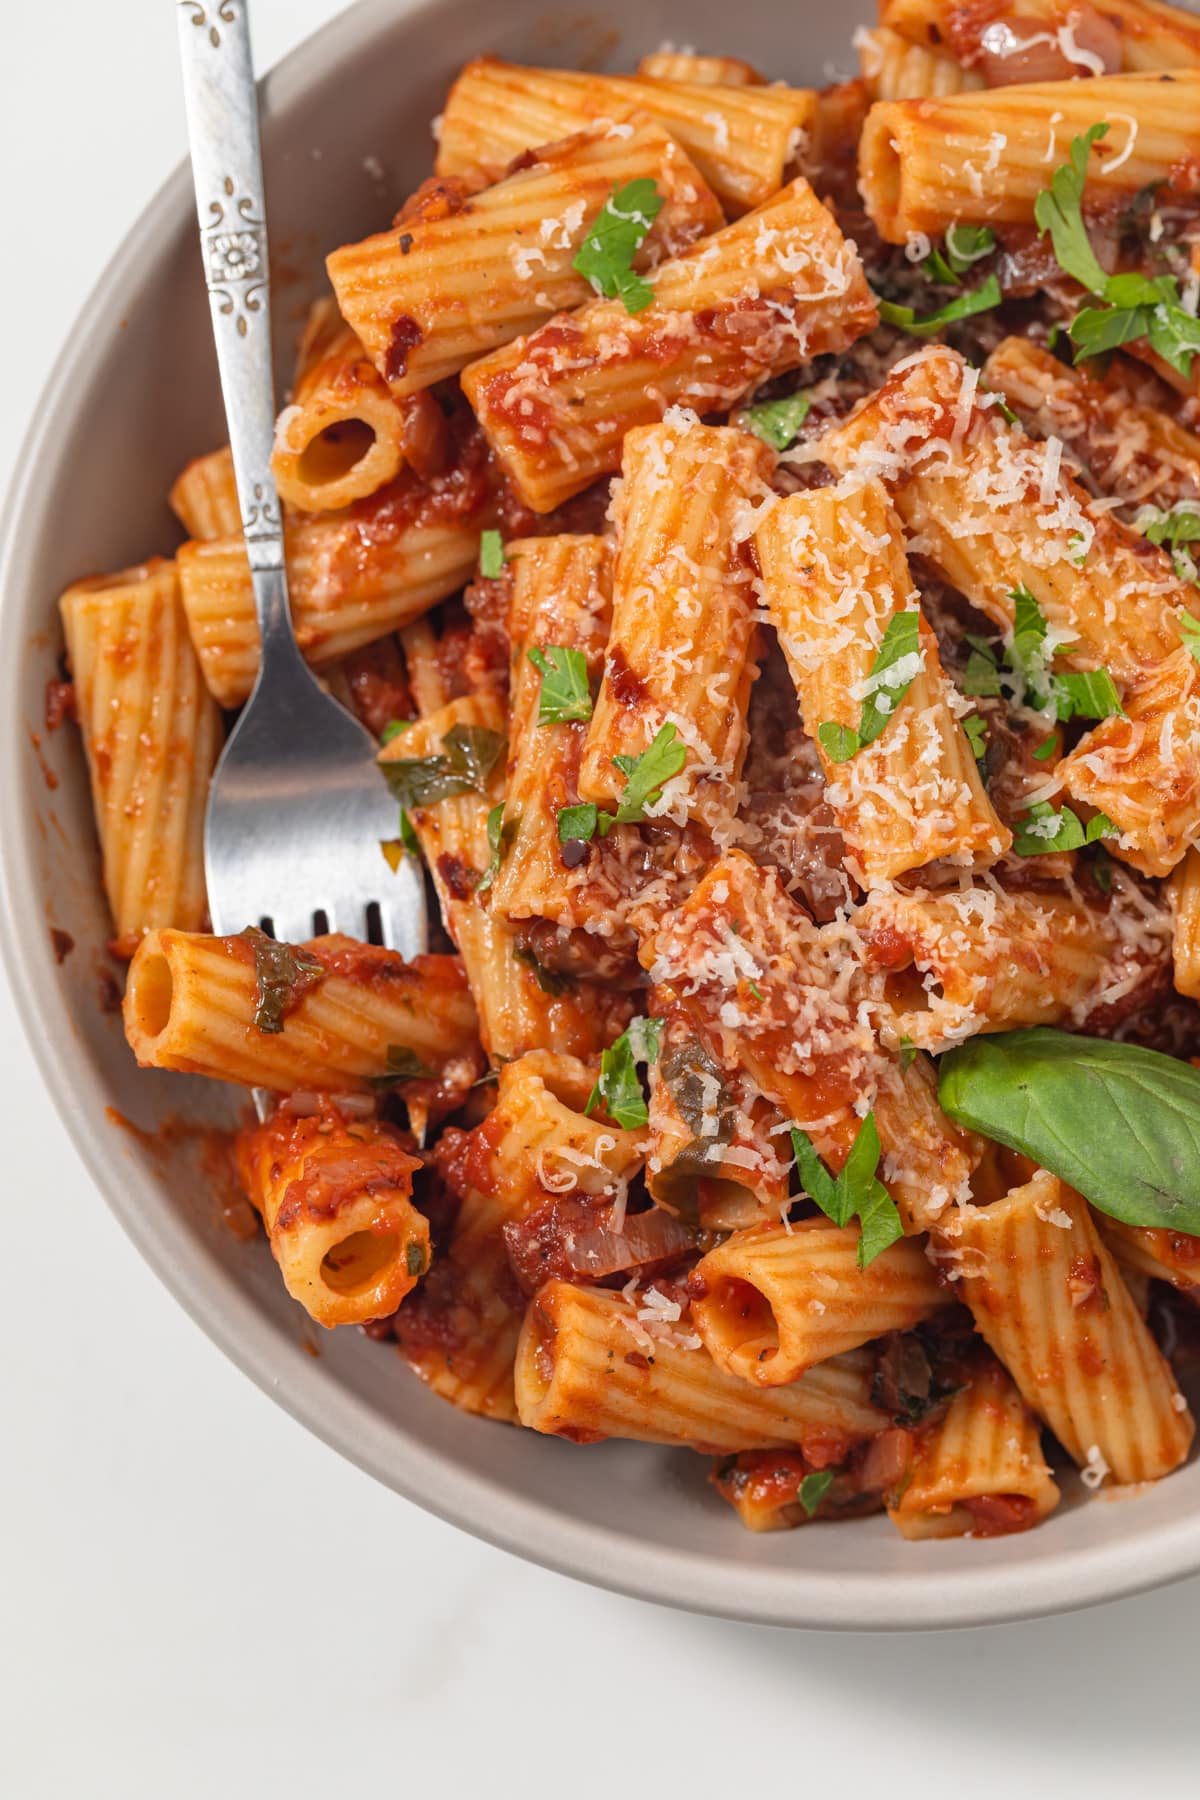 Close up of pasta with arrabbiata sauce.